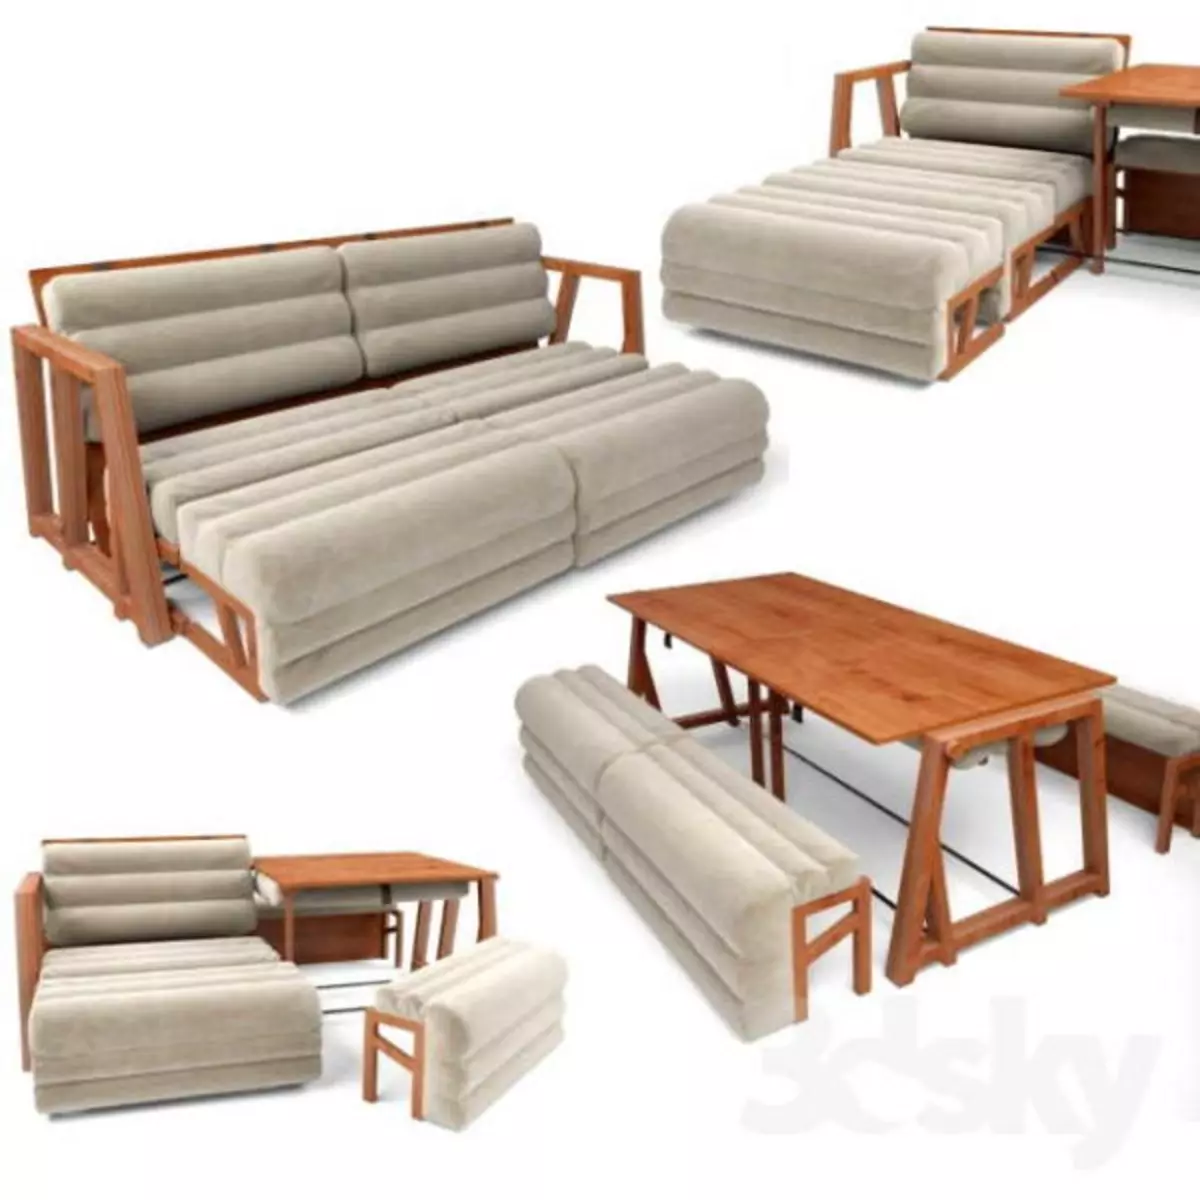 Мебель три дивана. 3moods диван-трансформер (стол, кресло, диван,) by Humberto Navarro, Unamo Design Studio. Диван трансформер 3 в 1 диван стол. Chavannes диван трансформер. Кровать-диван стол трансформер 3 в 1.